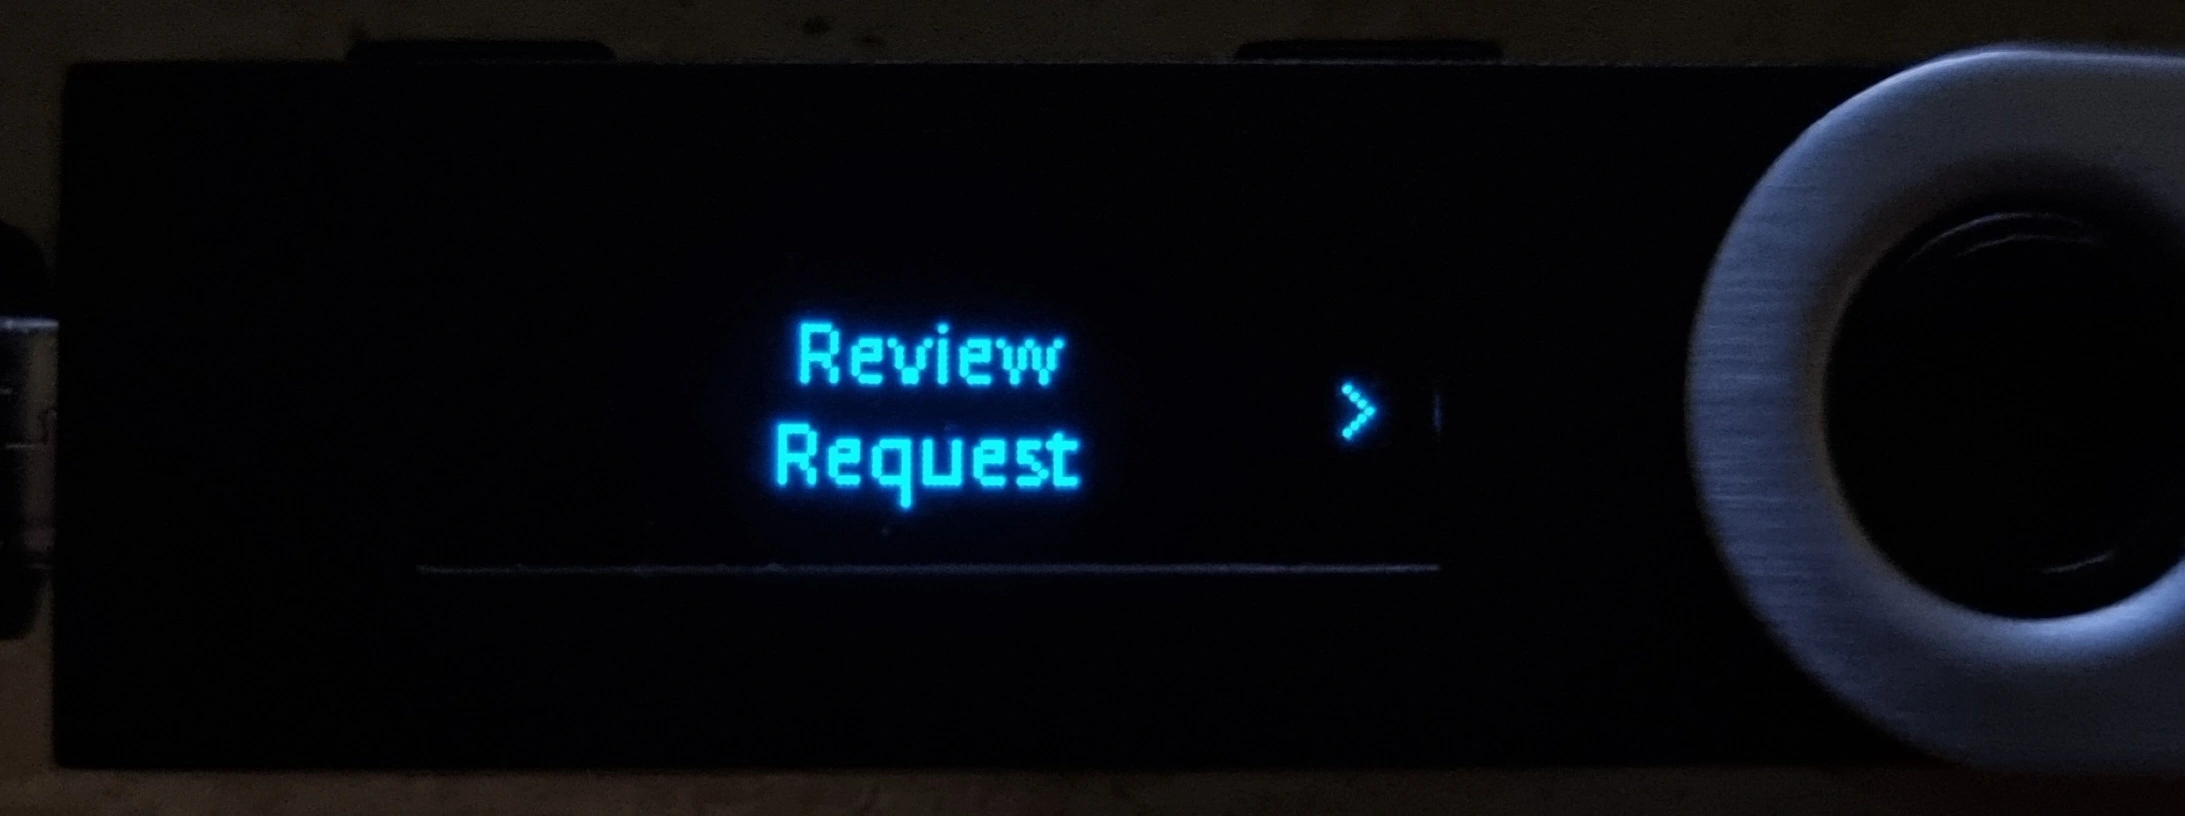 30_tezos_ledger_review_request